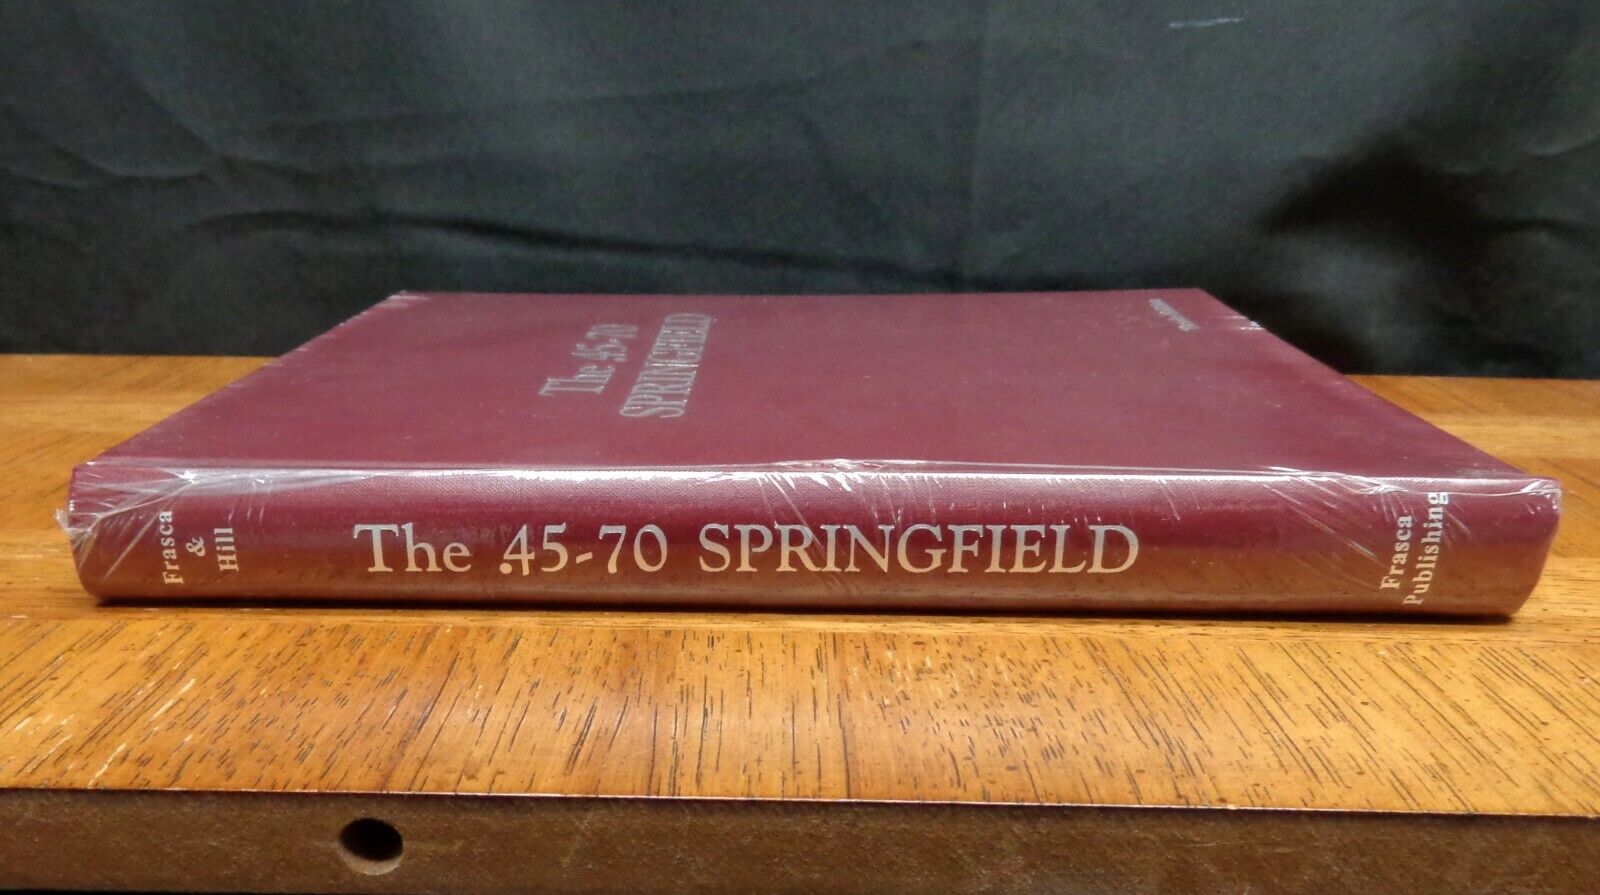 THE .45-70 SPRINGFIELD TRADE EDITION - NEW in Shrink Wrap   Albert Frasca Popularna wyprzedaż, najnowsza praca